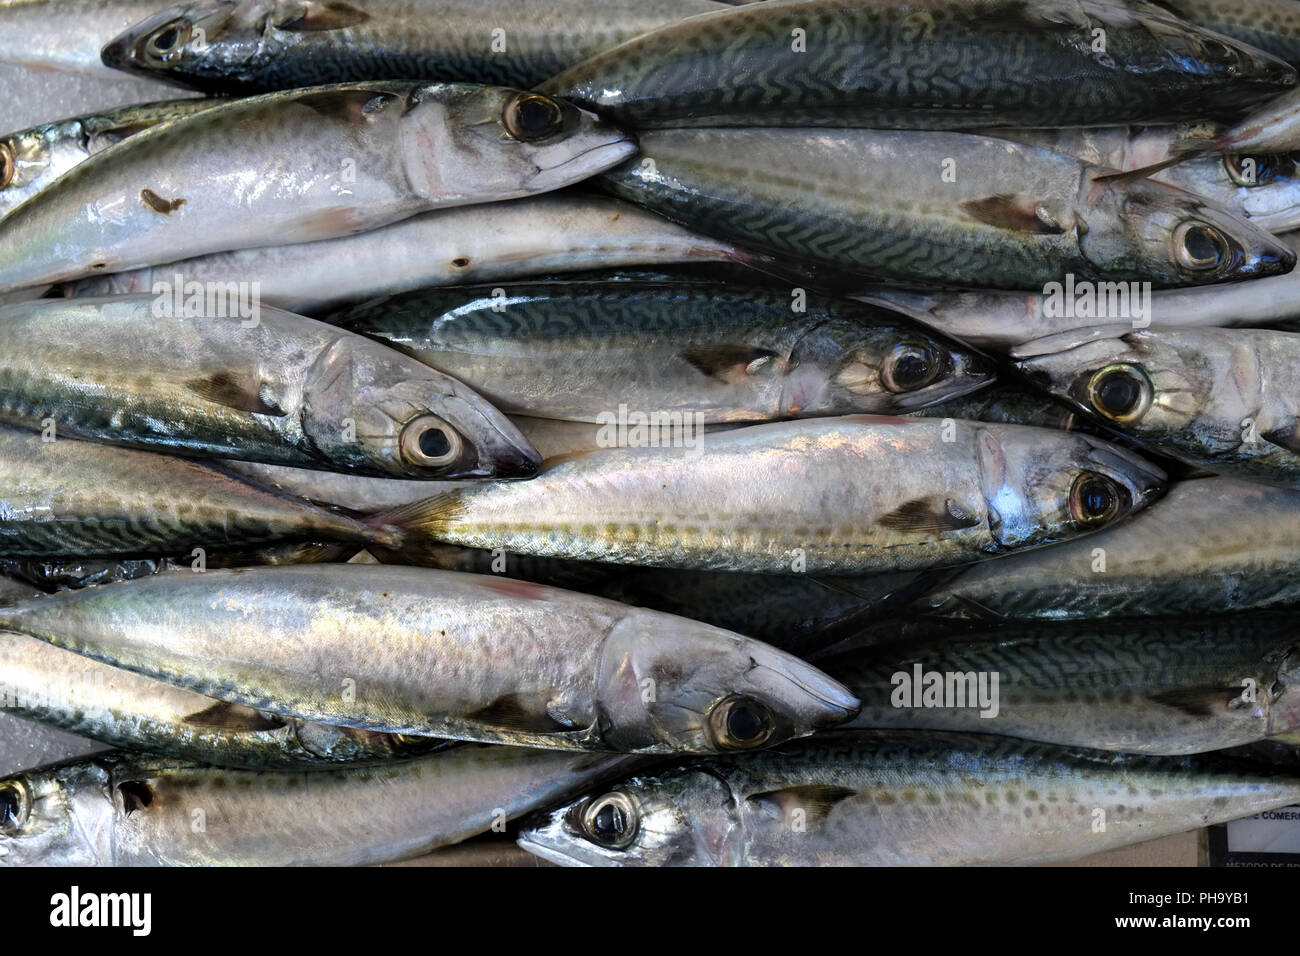 Freshly caught fish Stock Photo